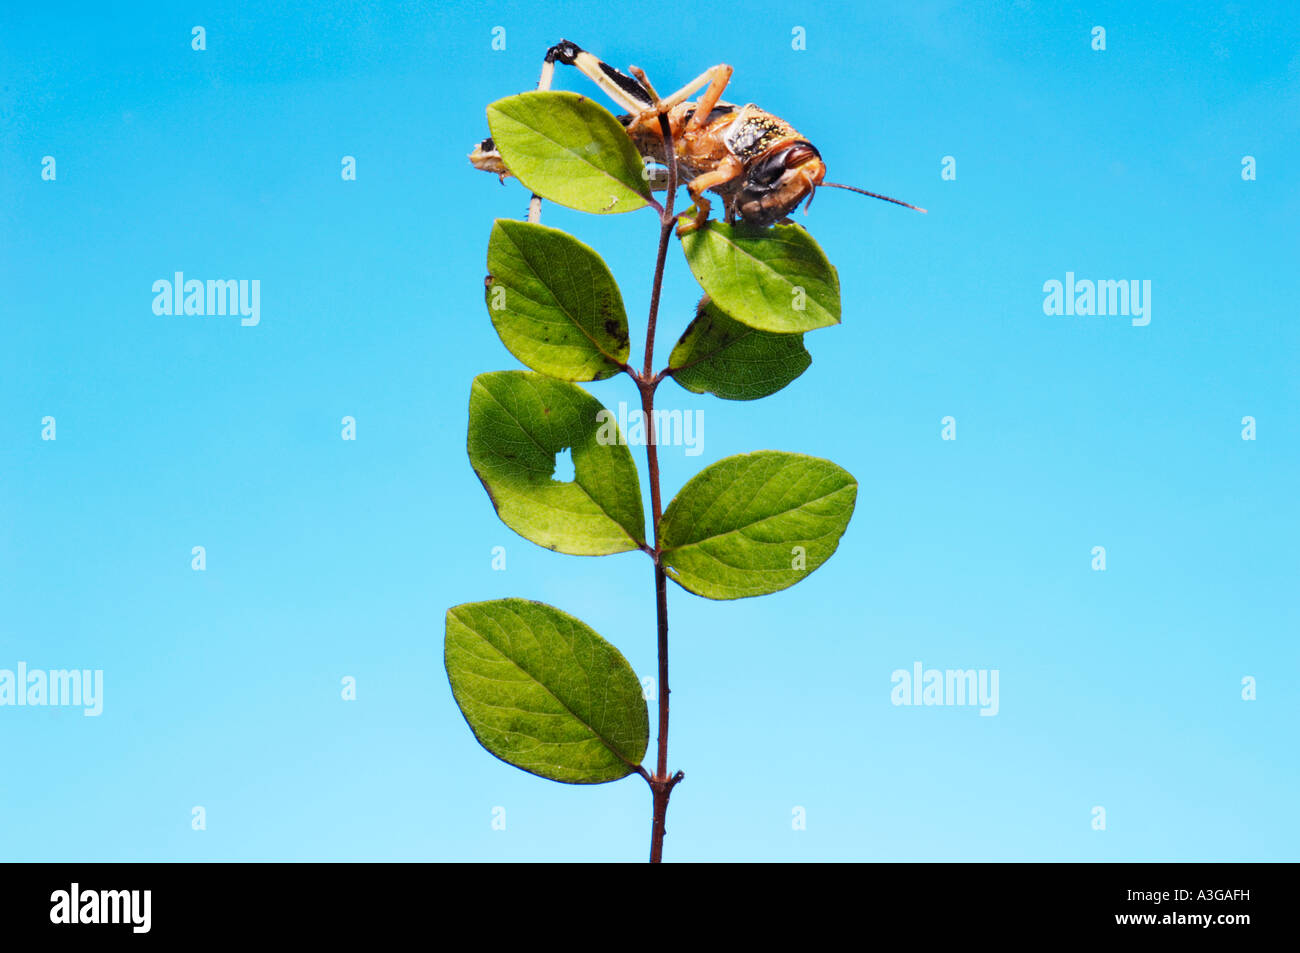 1 eine afrikanische Wüste Heuschrecke Schistocerca Gregaria Halbwüchsige GRASSHOPPER Essen feed grünes Blatt blau einfarbigen Hintergrund Stockfoto